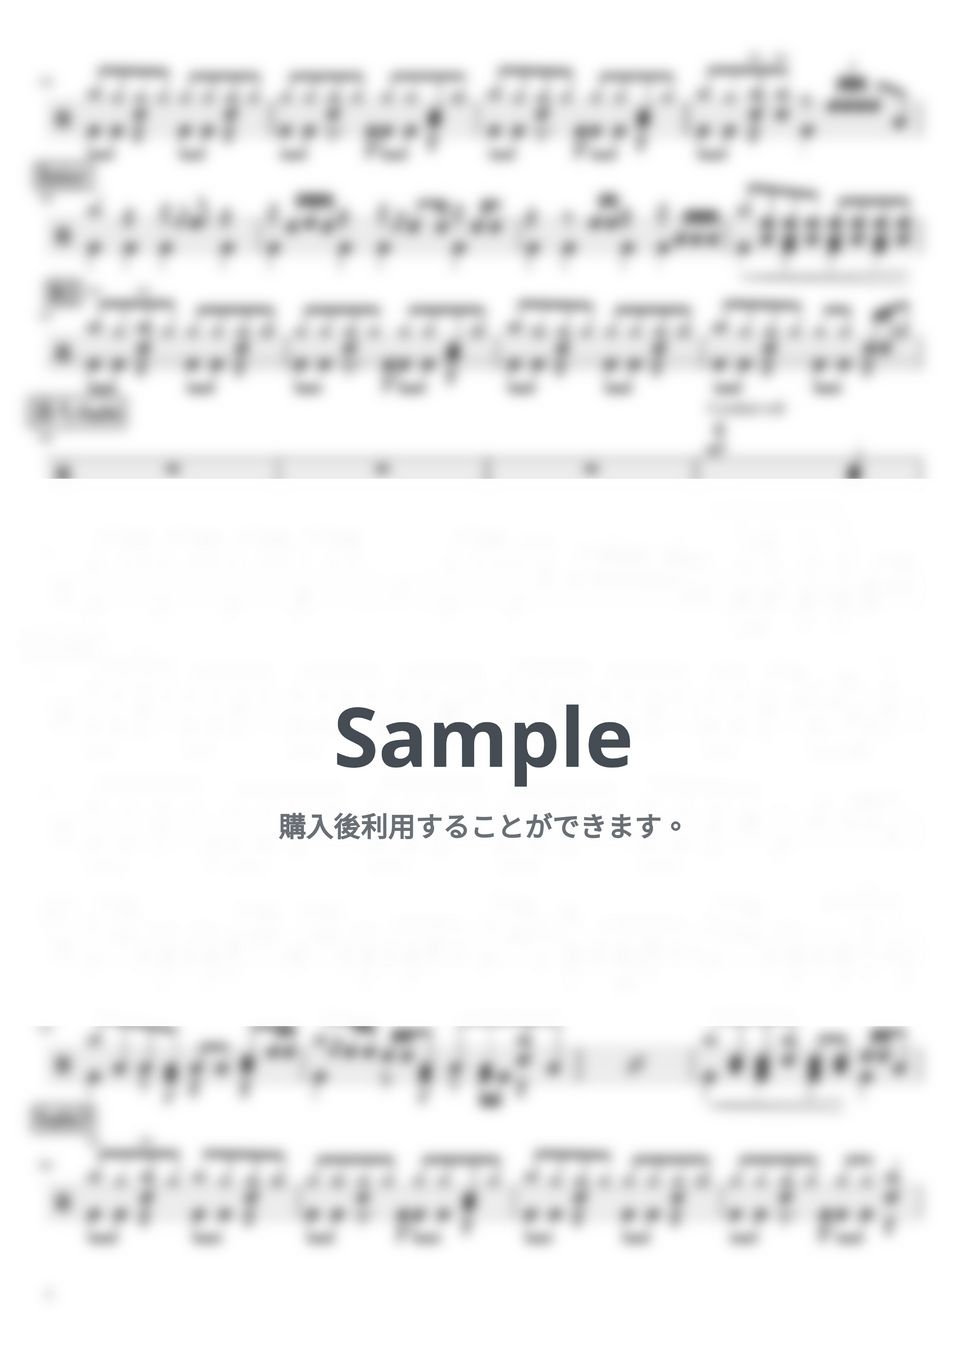 平原綾香 - Jupiter (ドラム譜面) by cabal